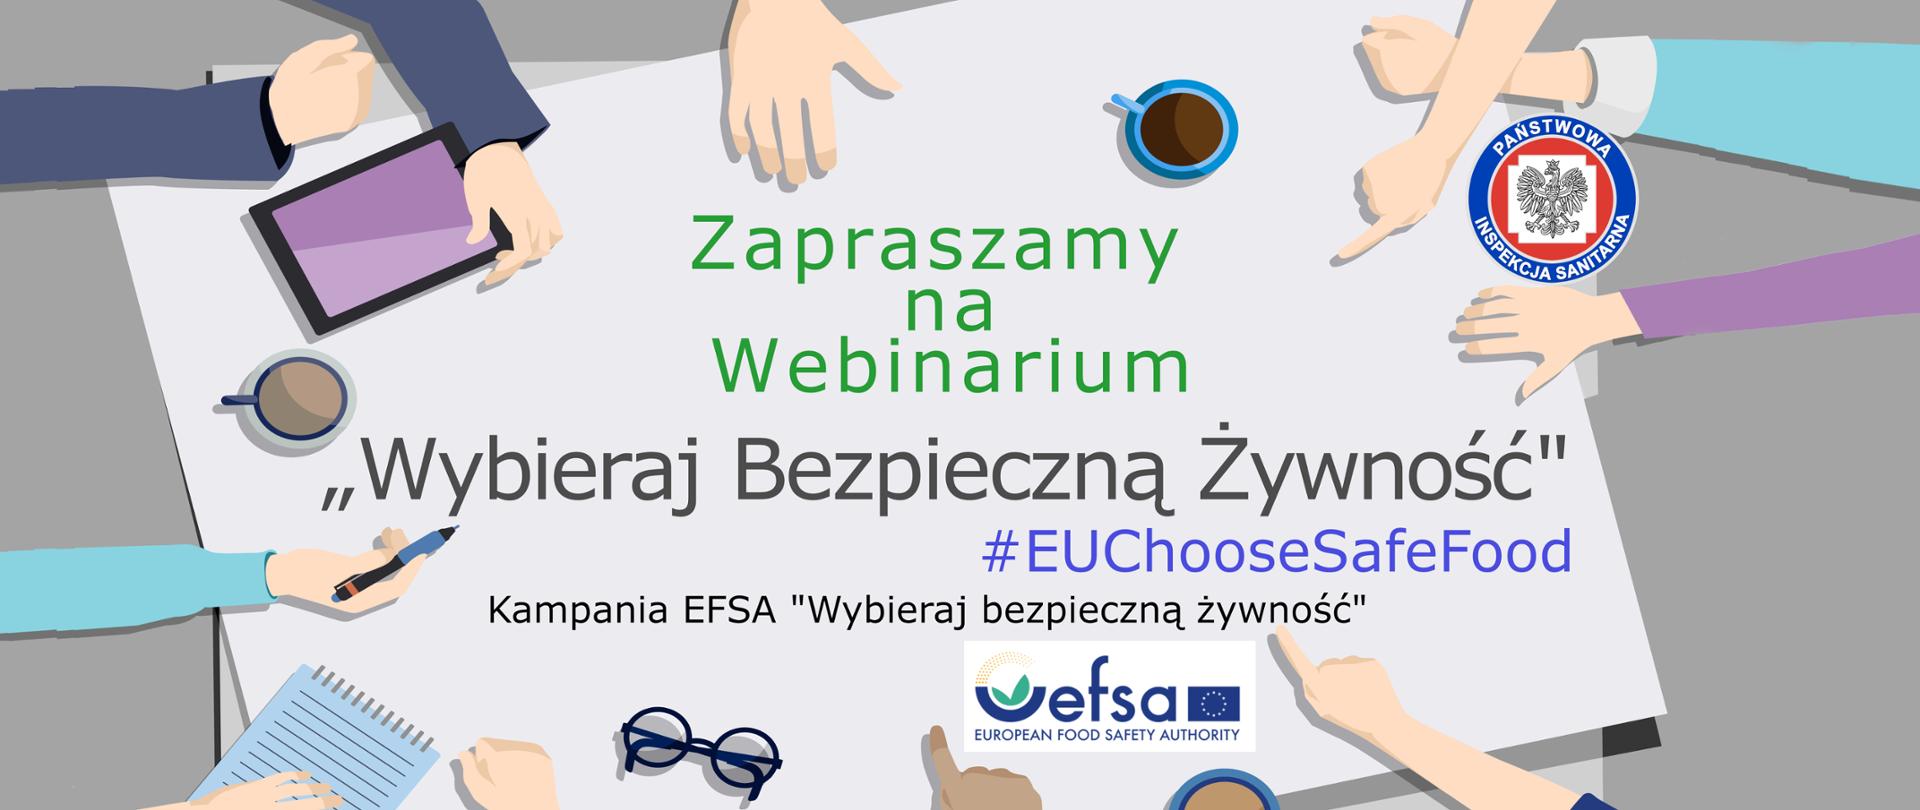 Webinar „Wybieraj Bezpieczną Żywność" #EUChooseSafeFood